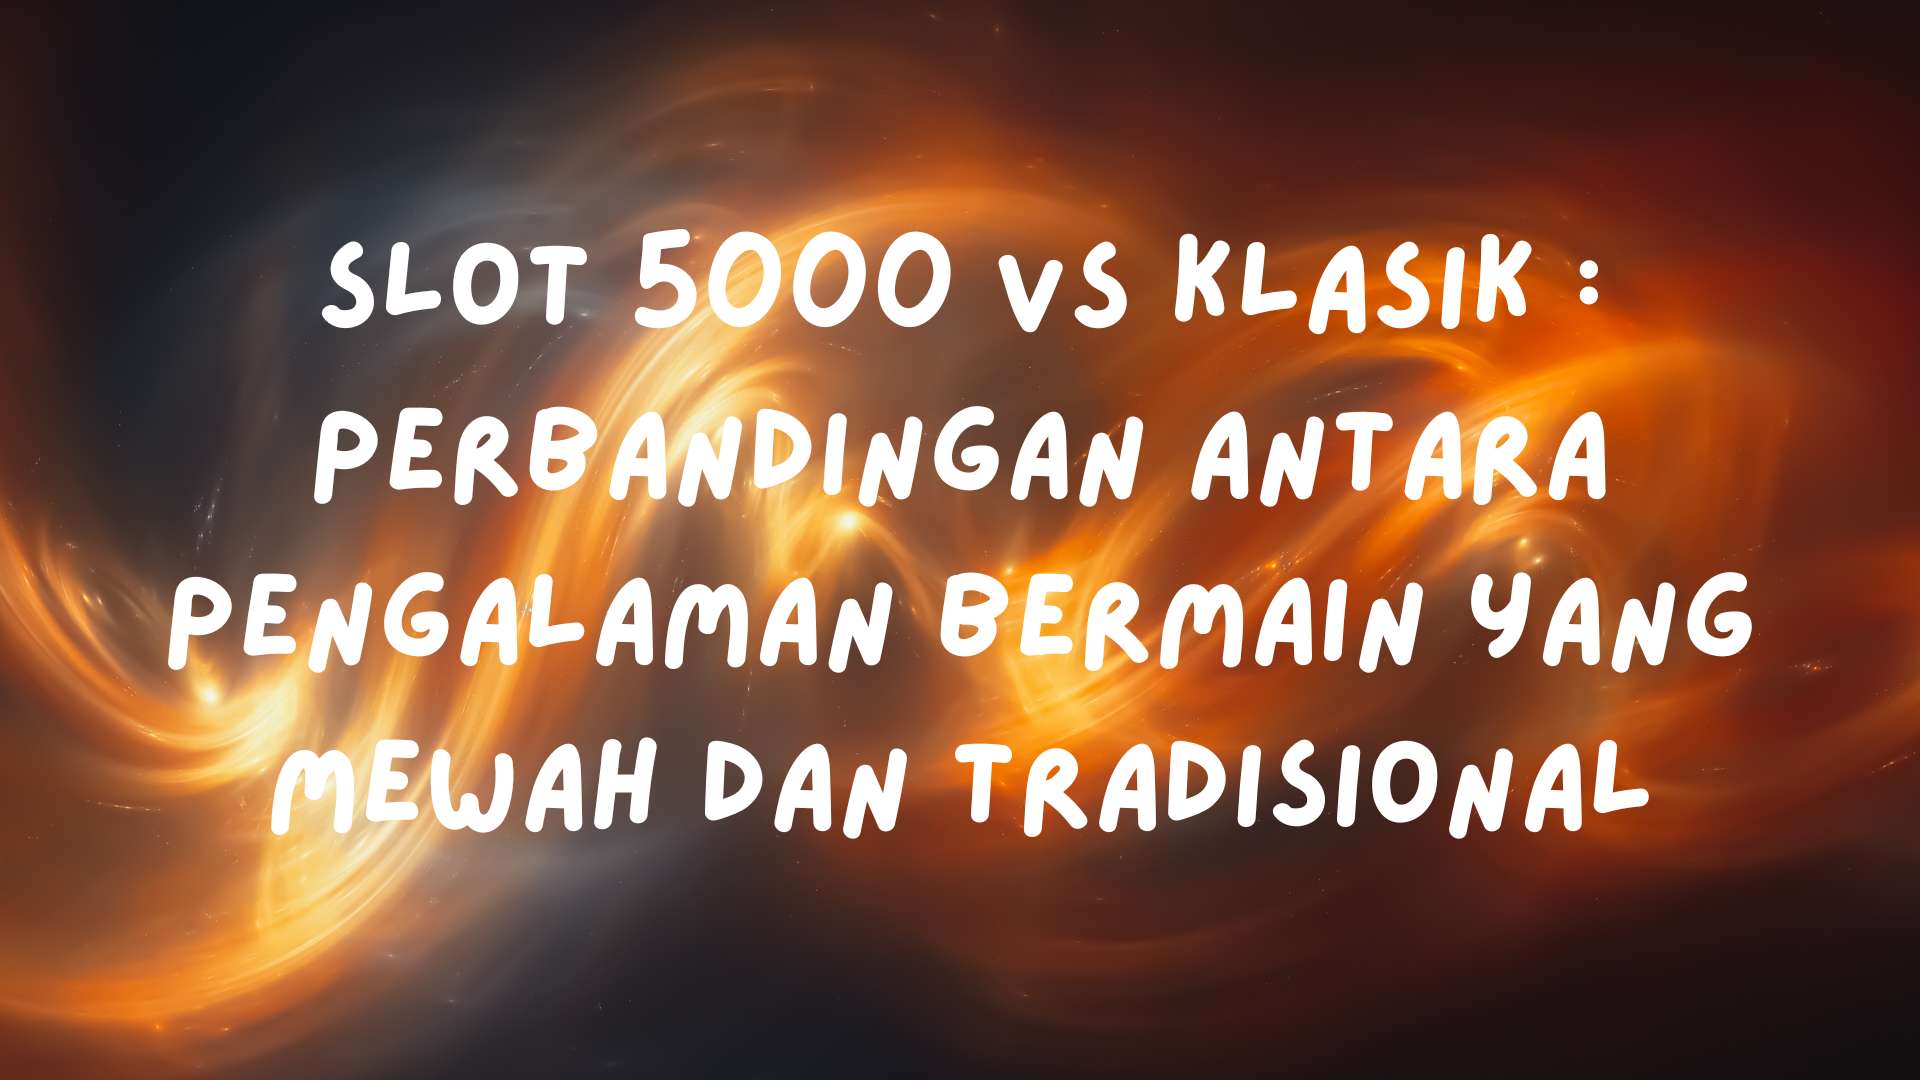 Slot 5000 vs Klasik